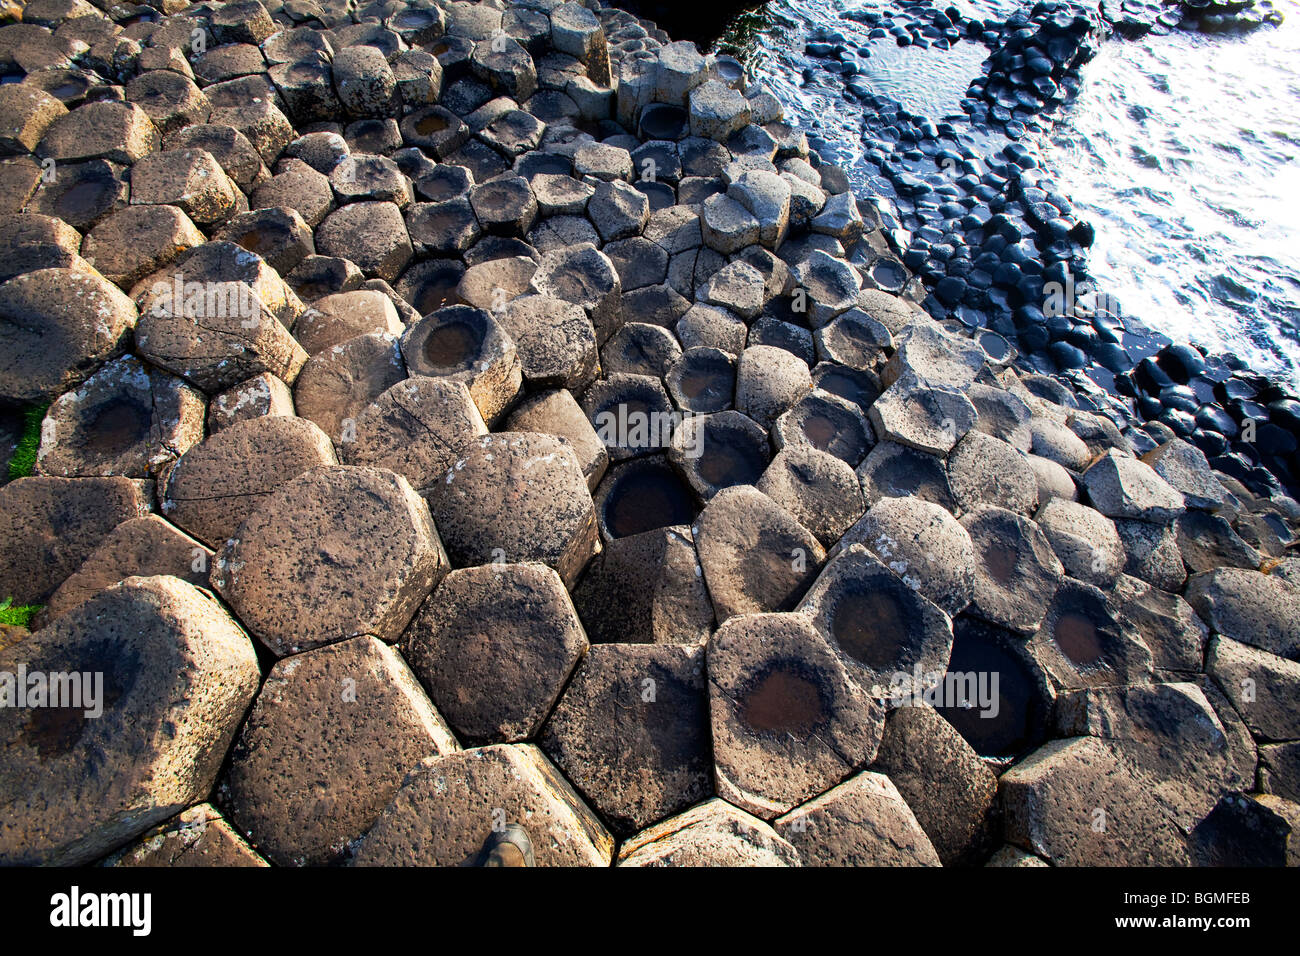 Fasi di roccia vulcanica al Giant's Causeway Antrim Irlanda del Nord un fenomeno naturale e un sito del patrimonio mondiale. Foto Stock